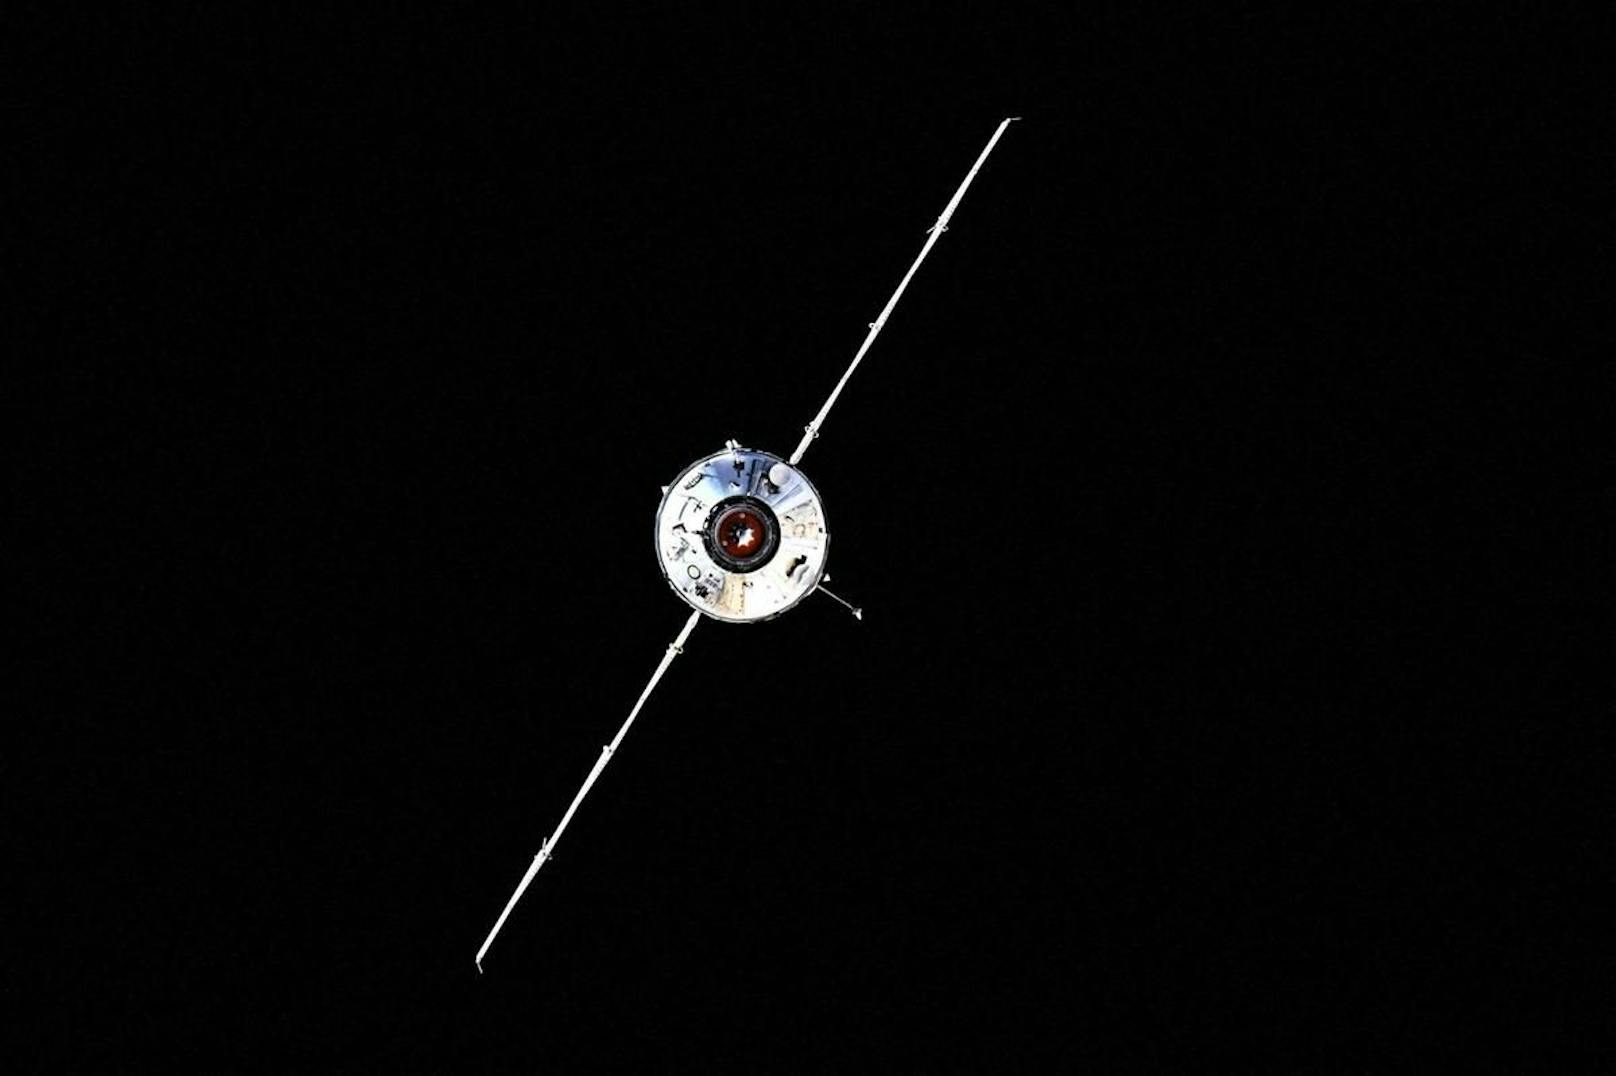 Hier nähert sich die Nauka der ISS.